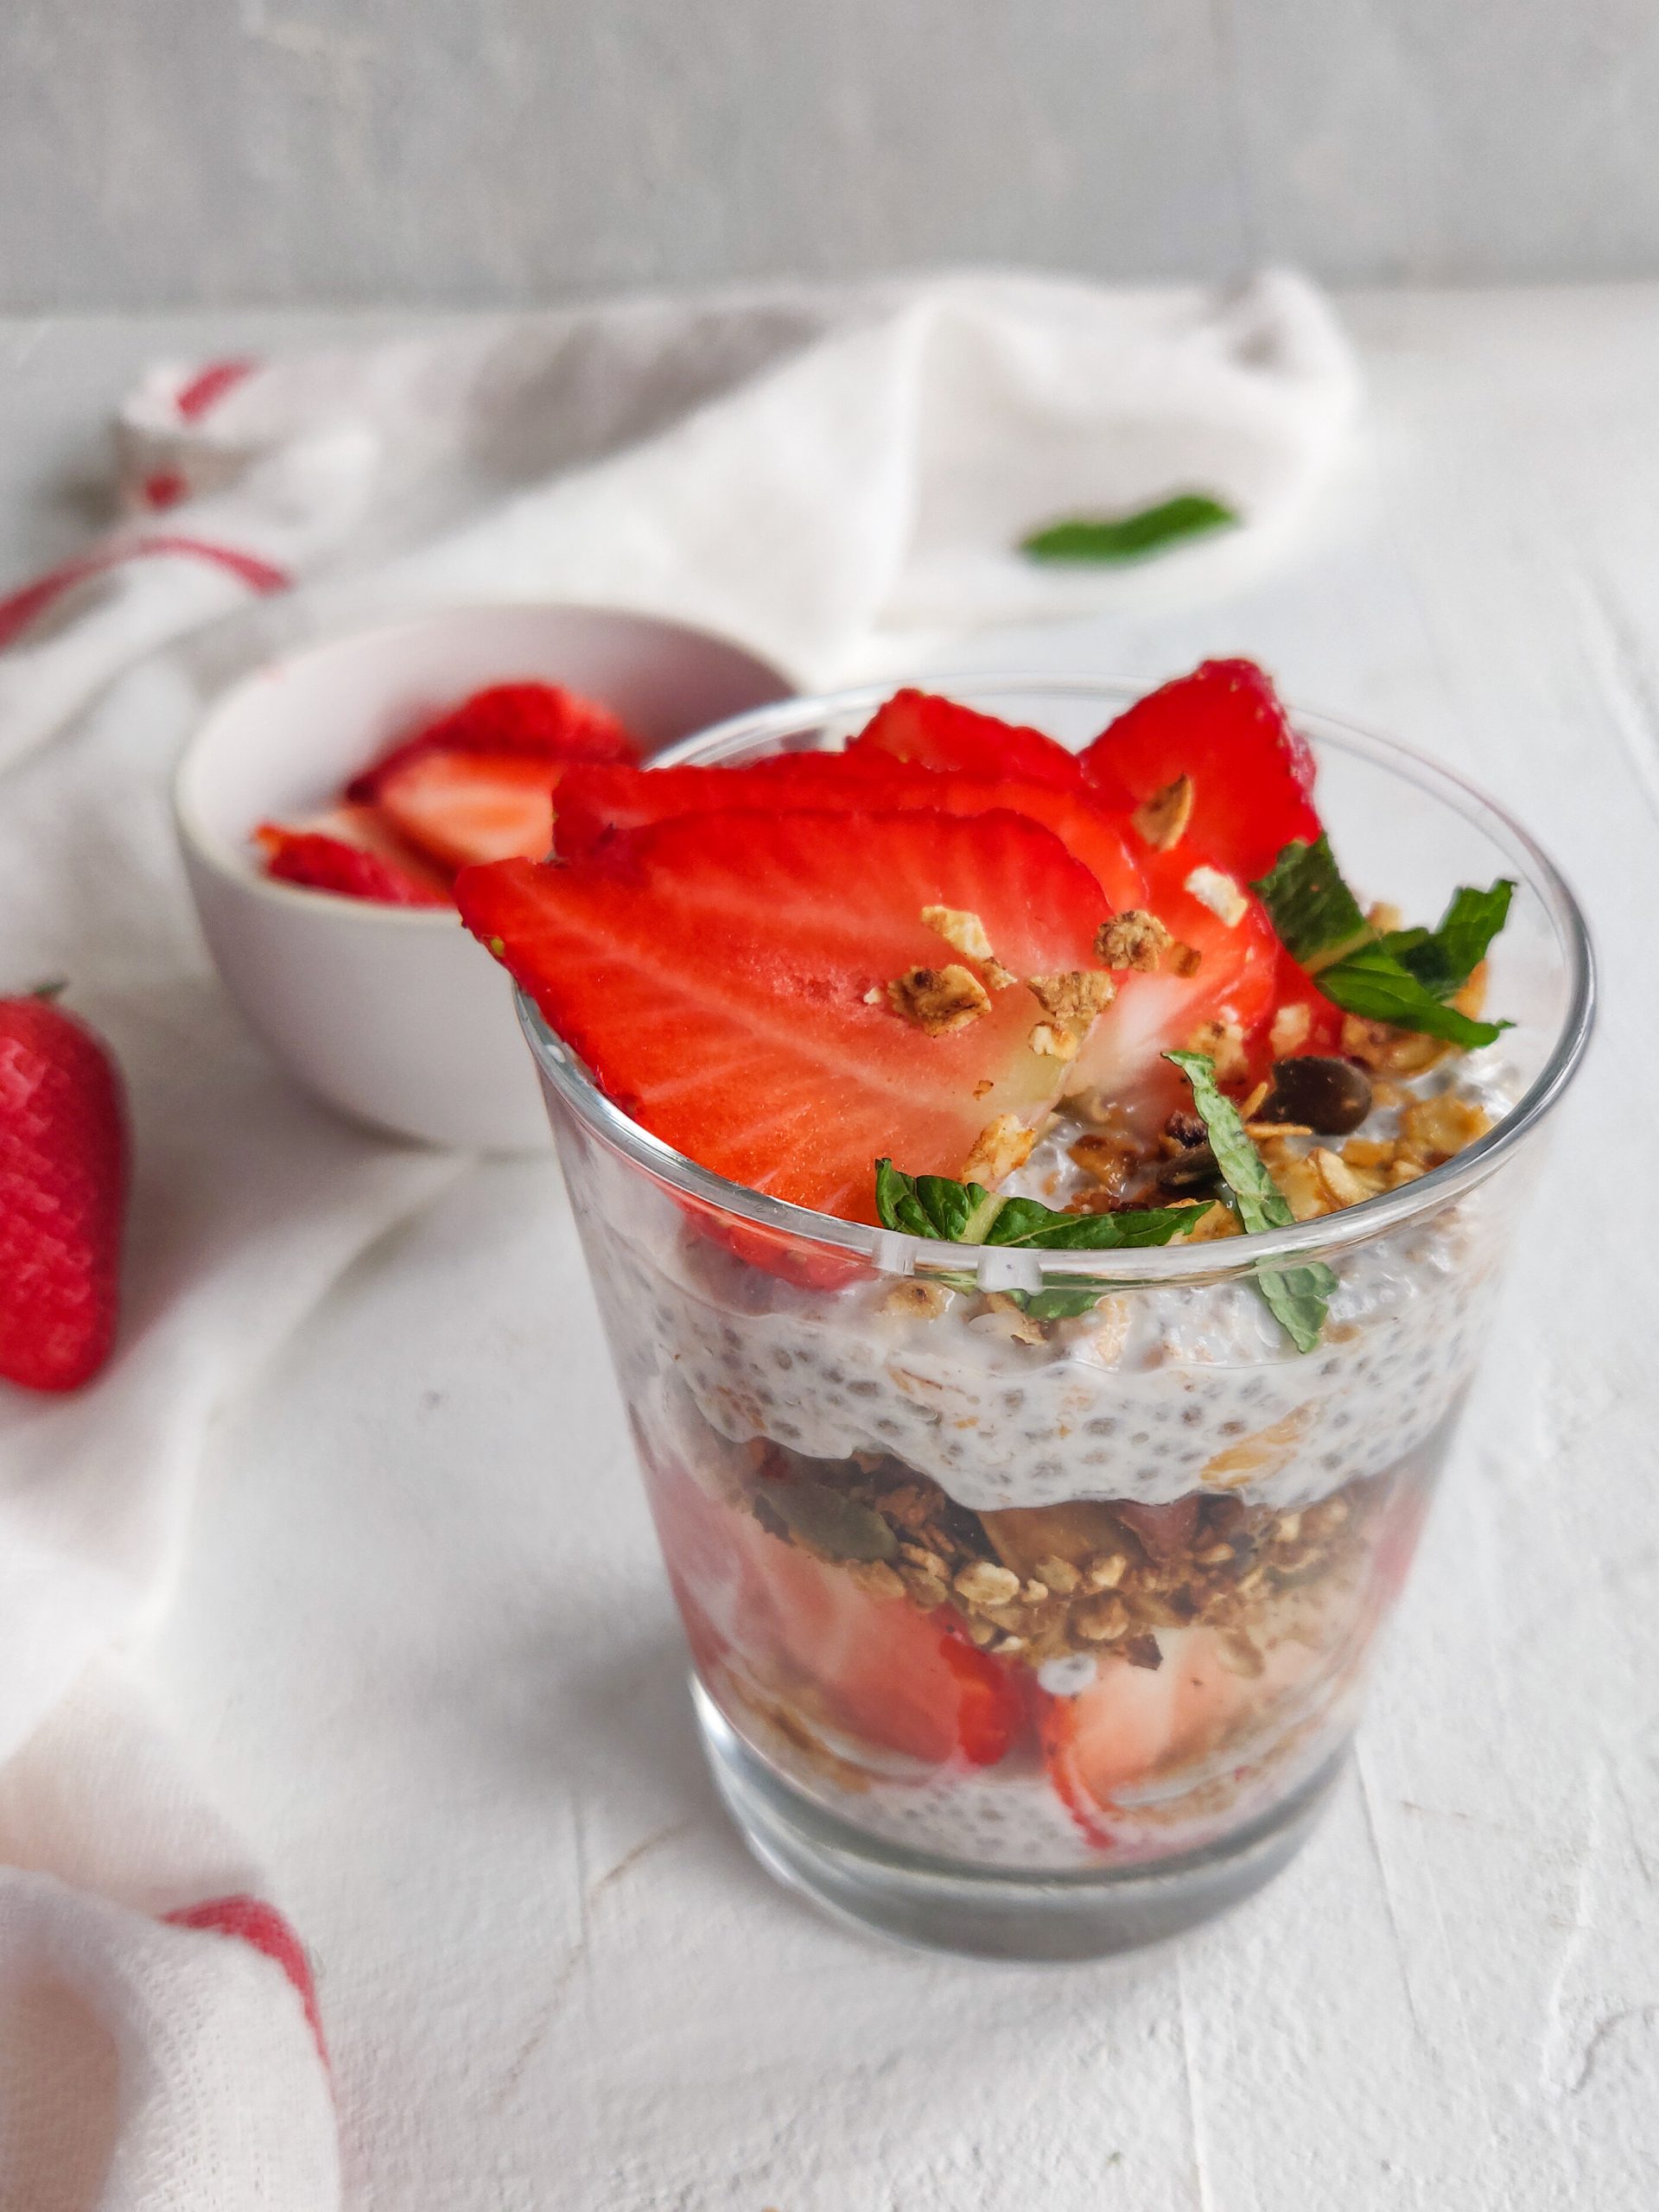 Lire la suite à propos de l’article Overnight porridge aux fraises